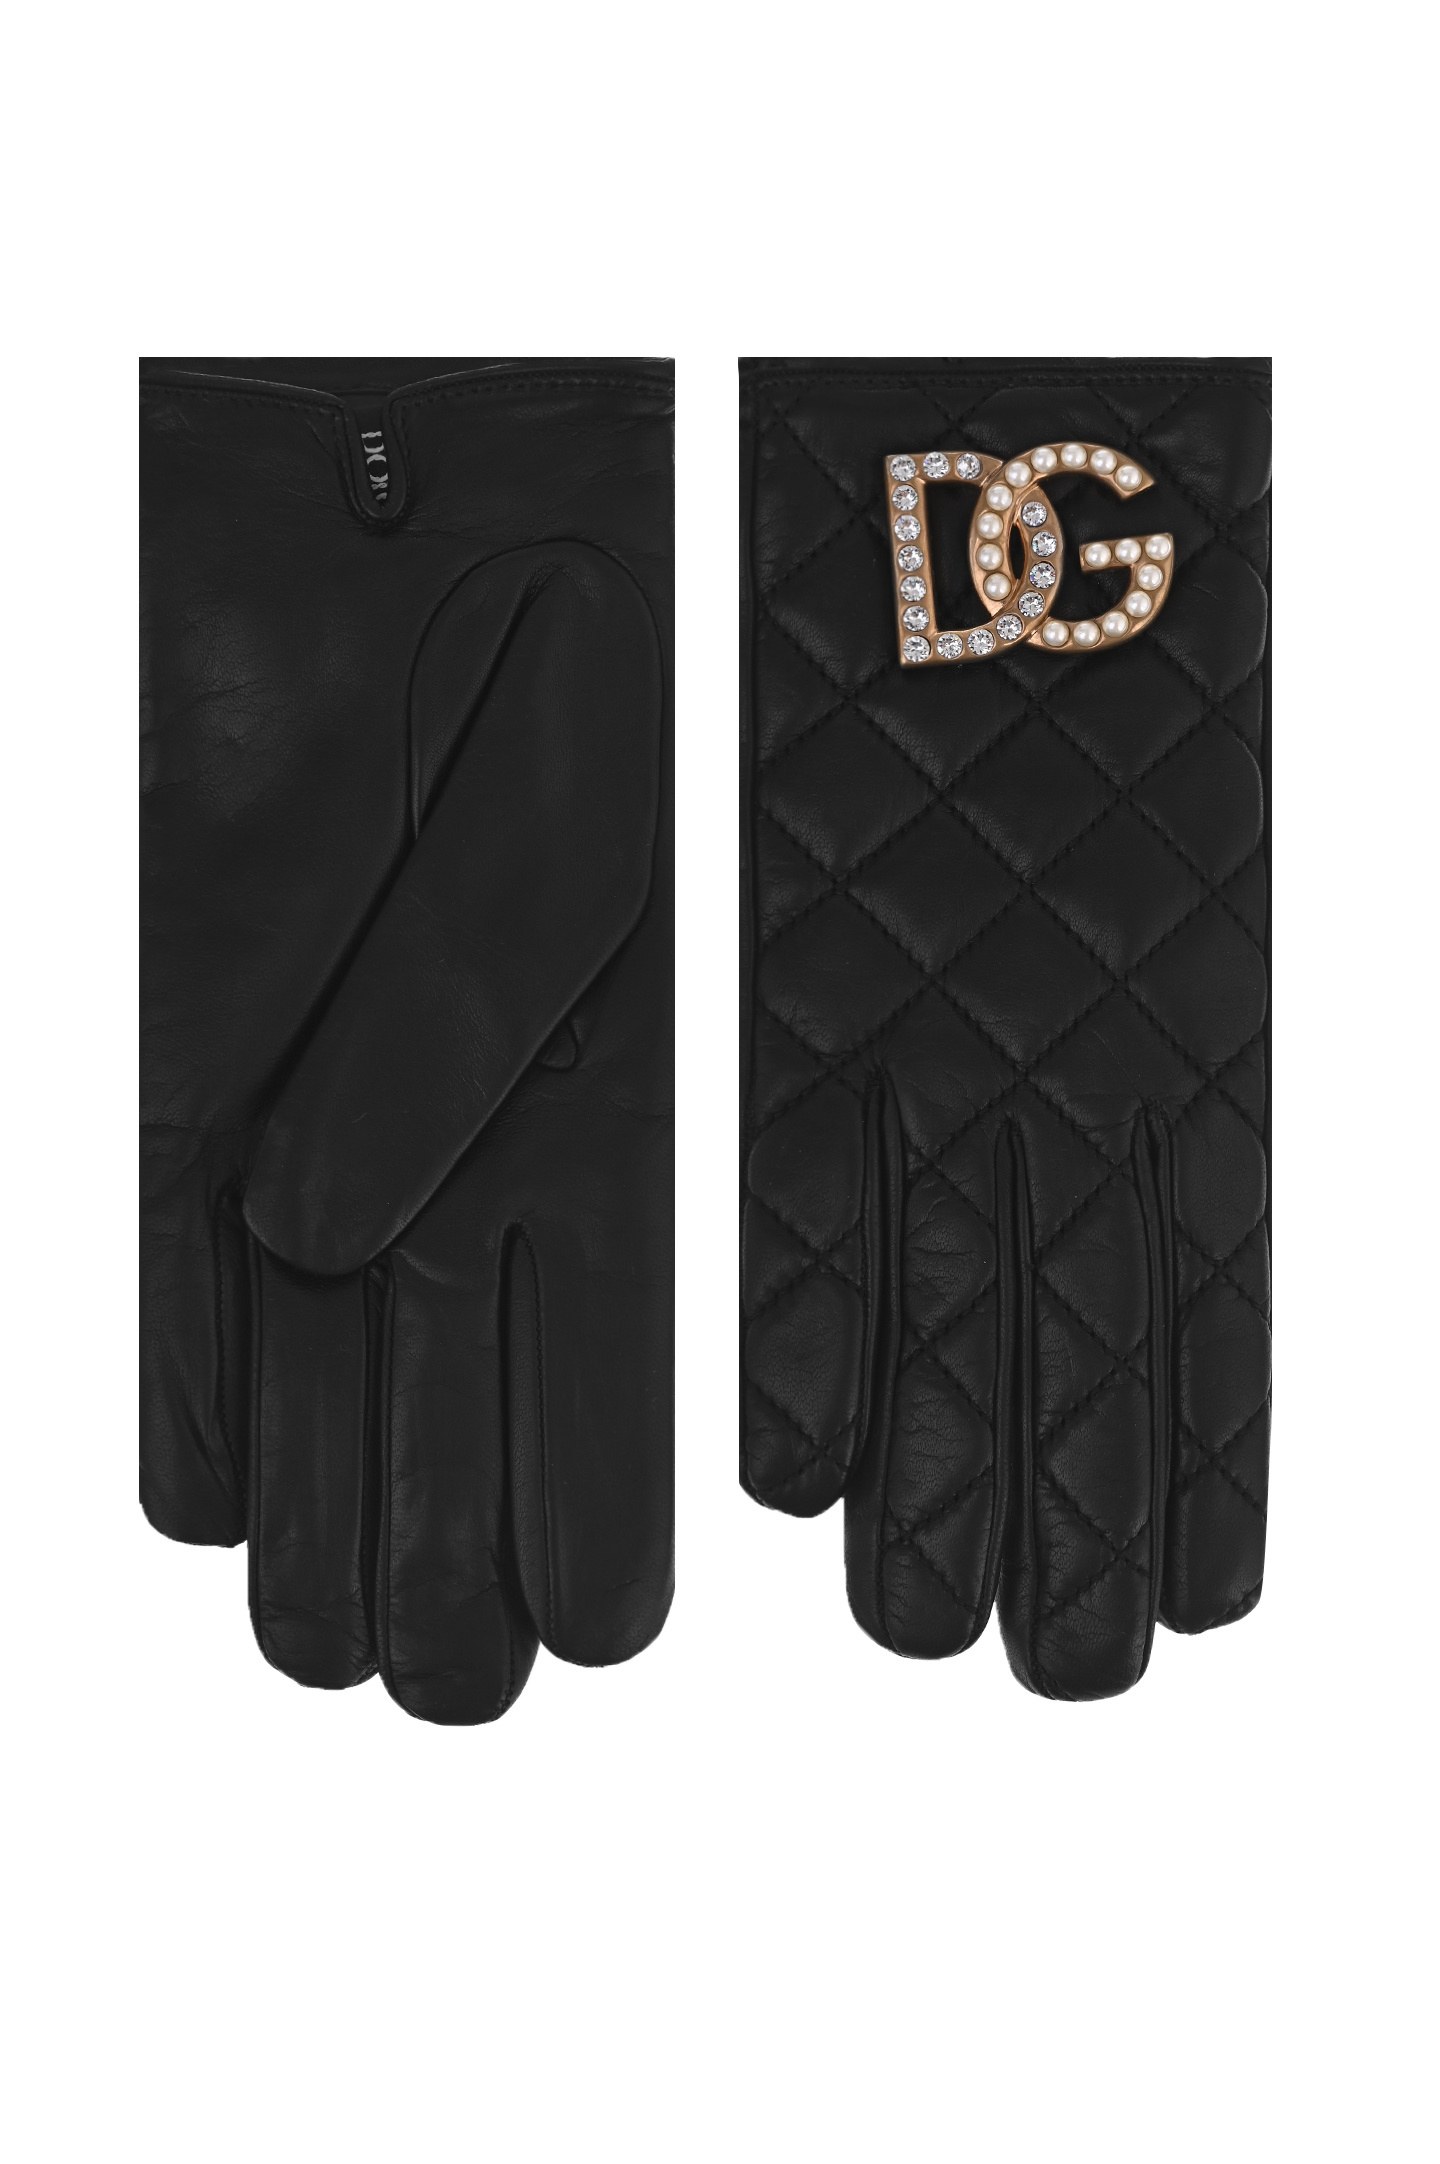 Перчатки DOLCE & GABBANA BF0170 AQ220, цвет: Черный, Женский